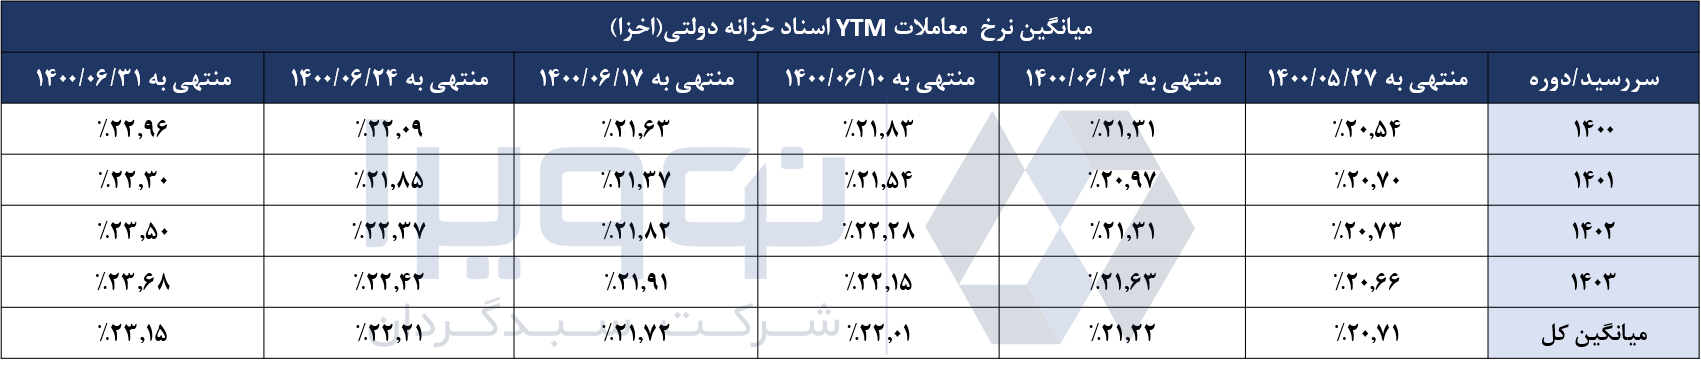 Average YTM trading rates